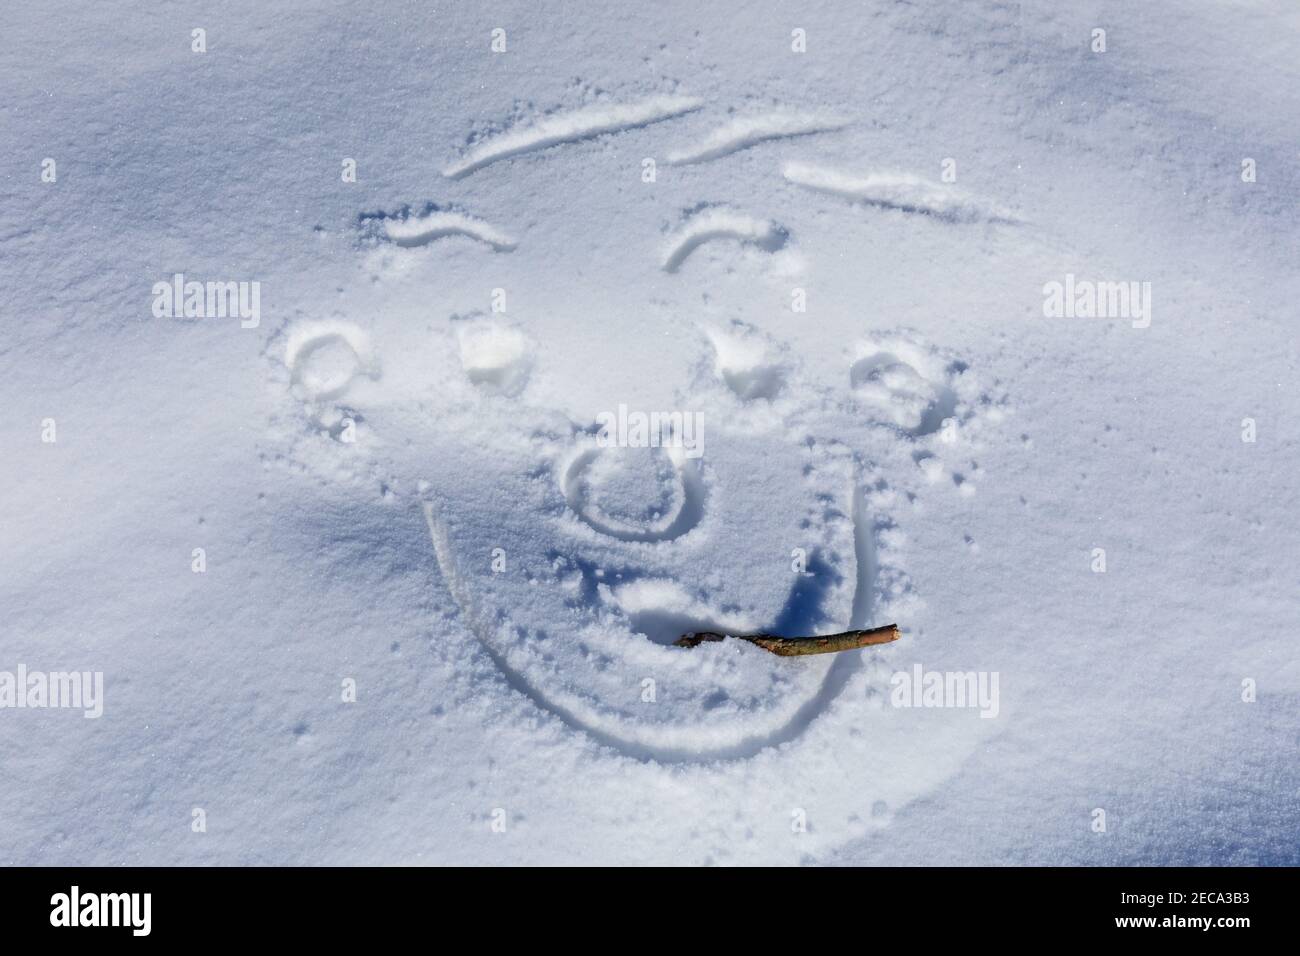 Réserve naturelle de Westruper Heide, NRW, Allemagne. 13 février 2021. Un visage enraché dans la neige. Les gens ont attiré des petits coeurs, des smileys et d'autres messages pour la Saint-Valentin demain dans la neige. Beaucoup de randonneurs sont au beau soleil tandis que les plantes de bruyère de Westruper Heide sont encore couvertes de neige. Credit: Imagetraceur/Alamy Live News Banque D'Images